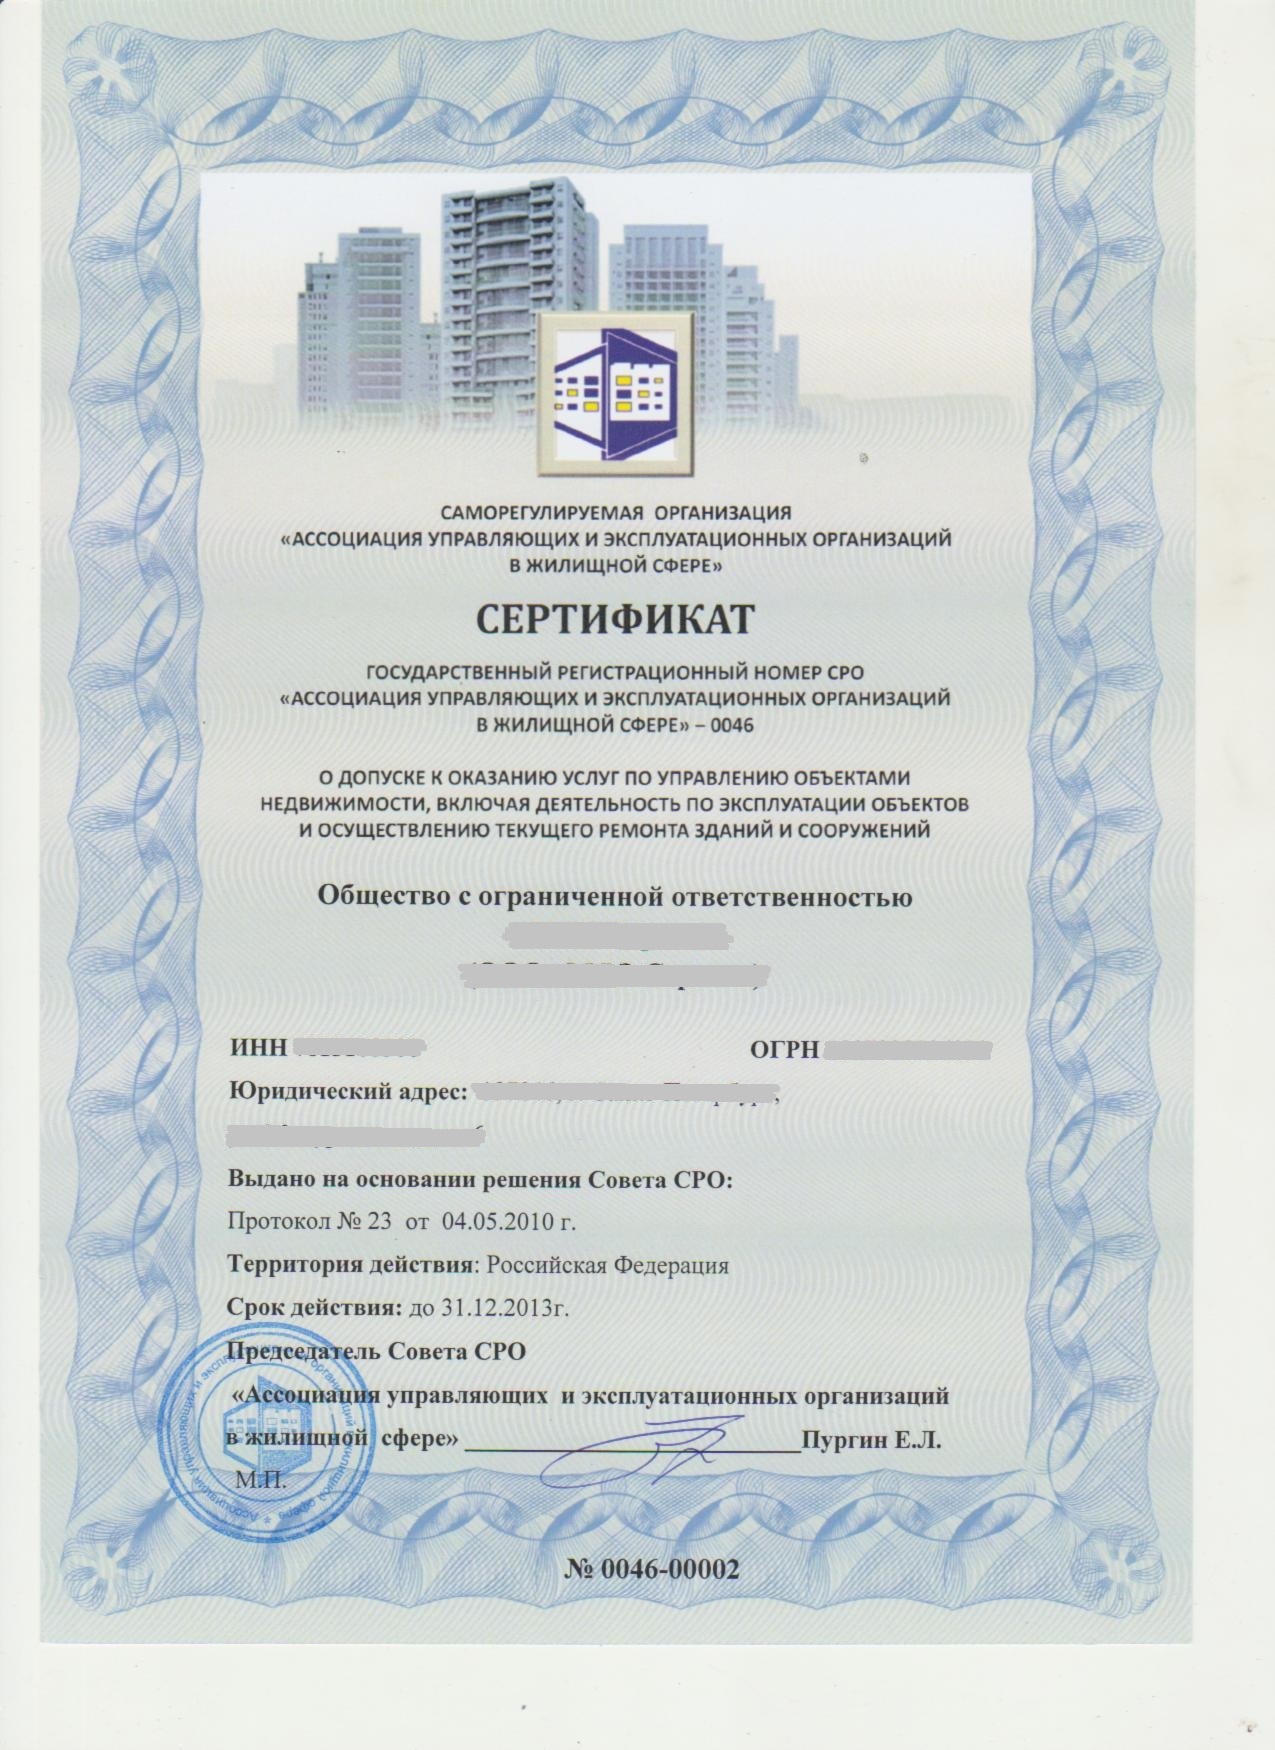 Сертификат о допуске к оказанию услуг по управлению объектами недвижимости 